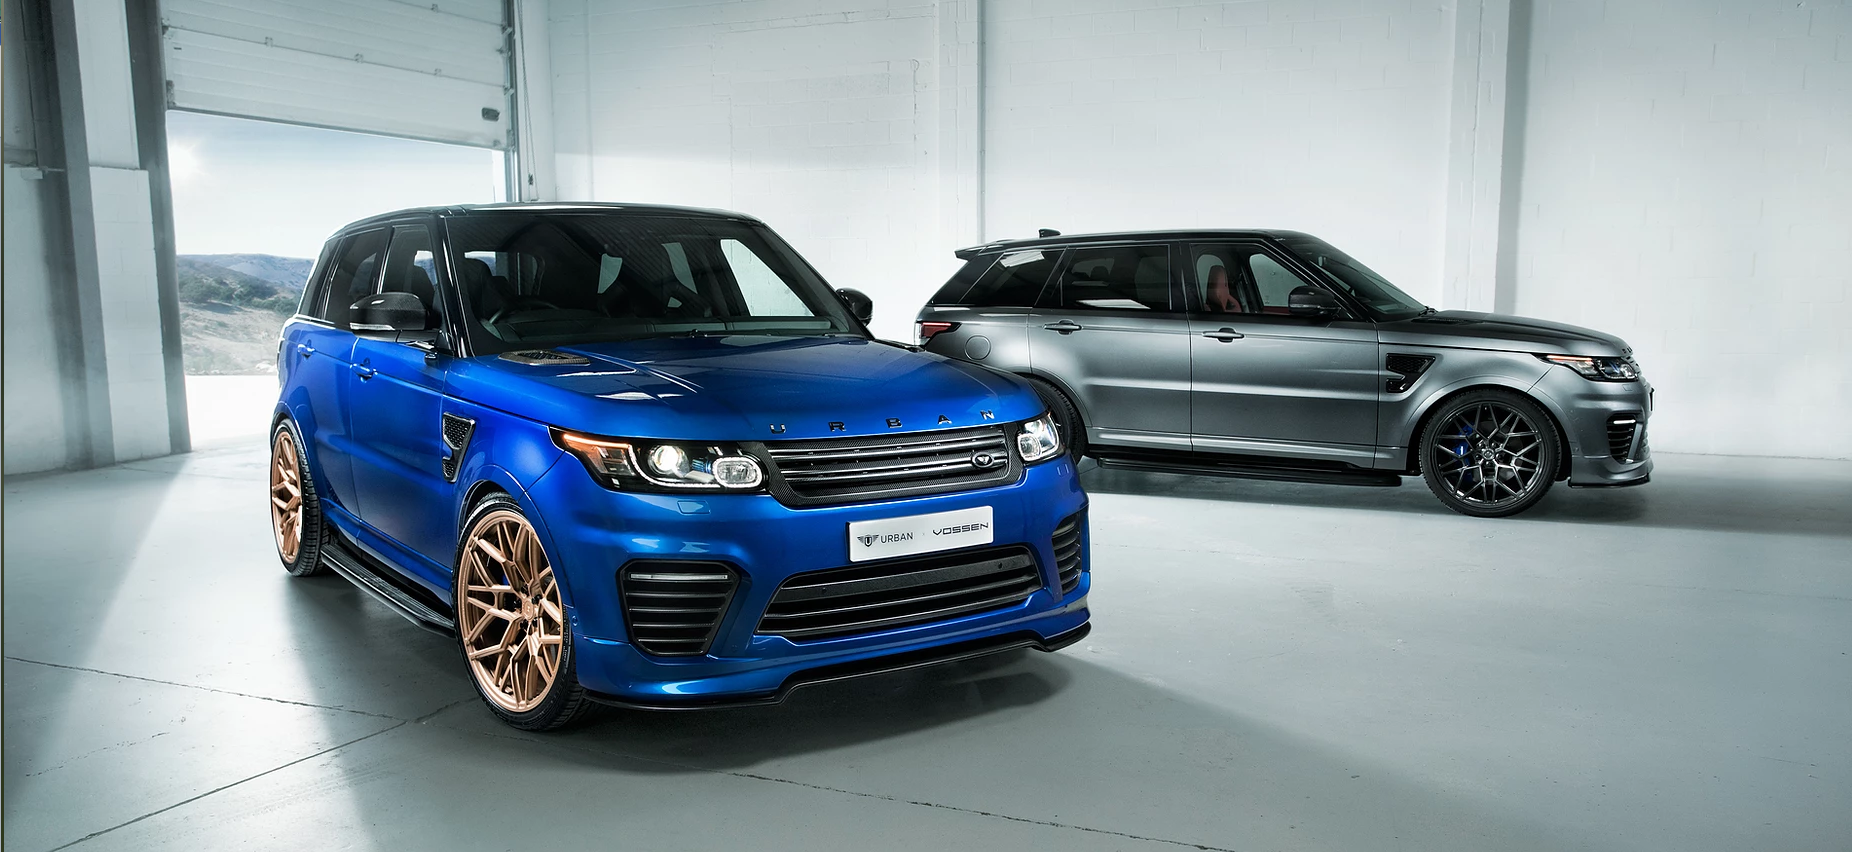 Urban  body kit for Range Rover Sport & SVR new model